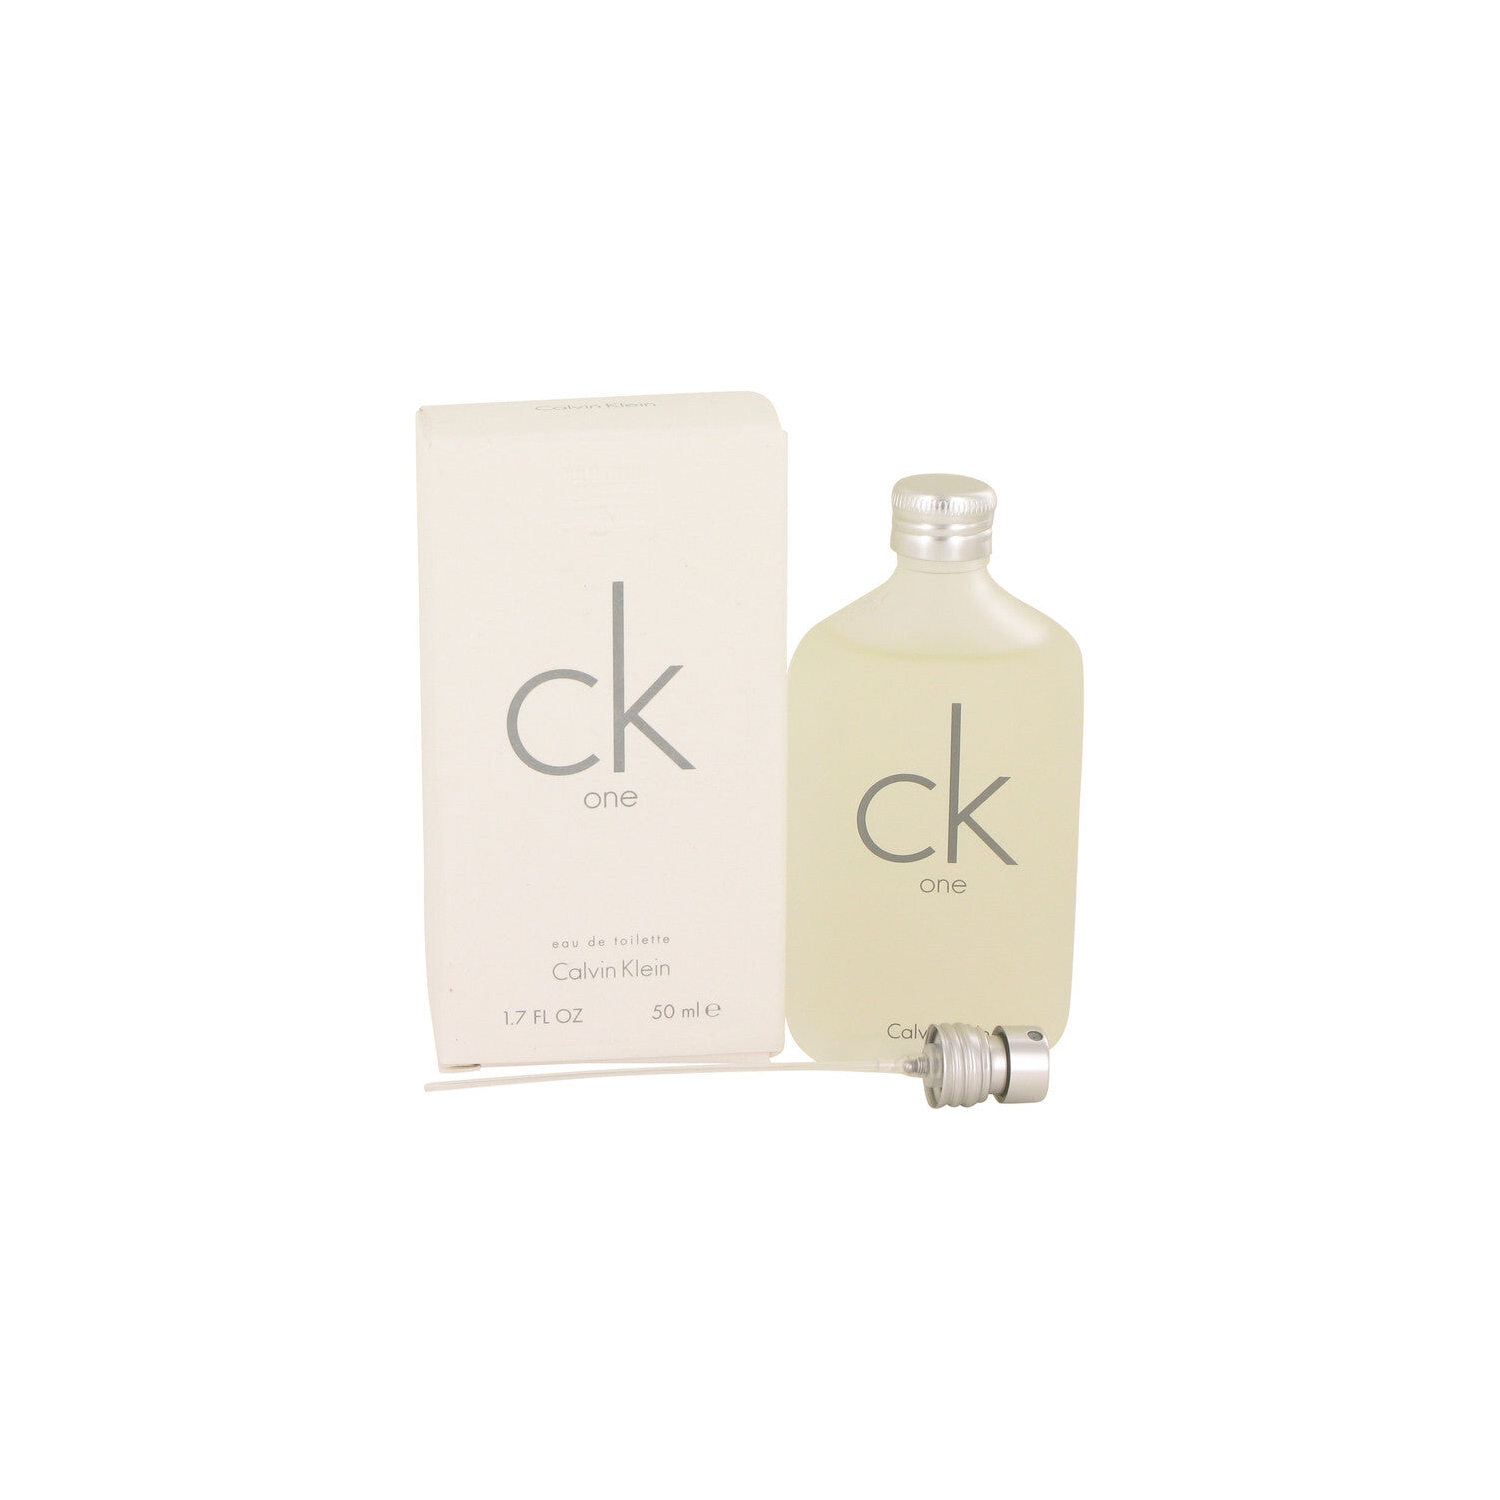 C.K. One by Calvin Klein for Unisex - 1.7 oz EDT Spray